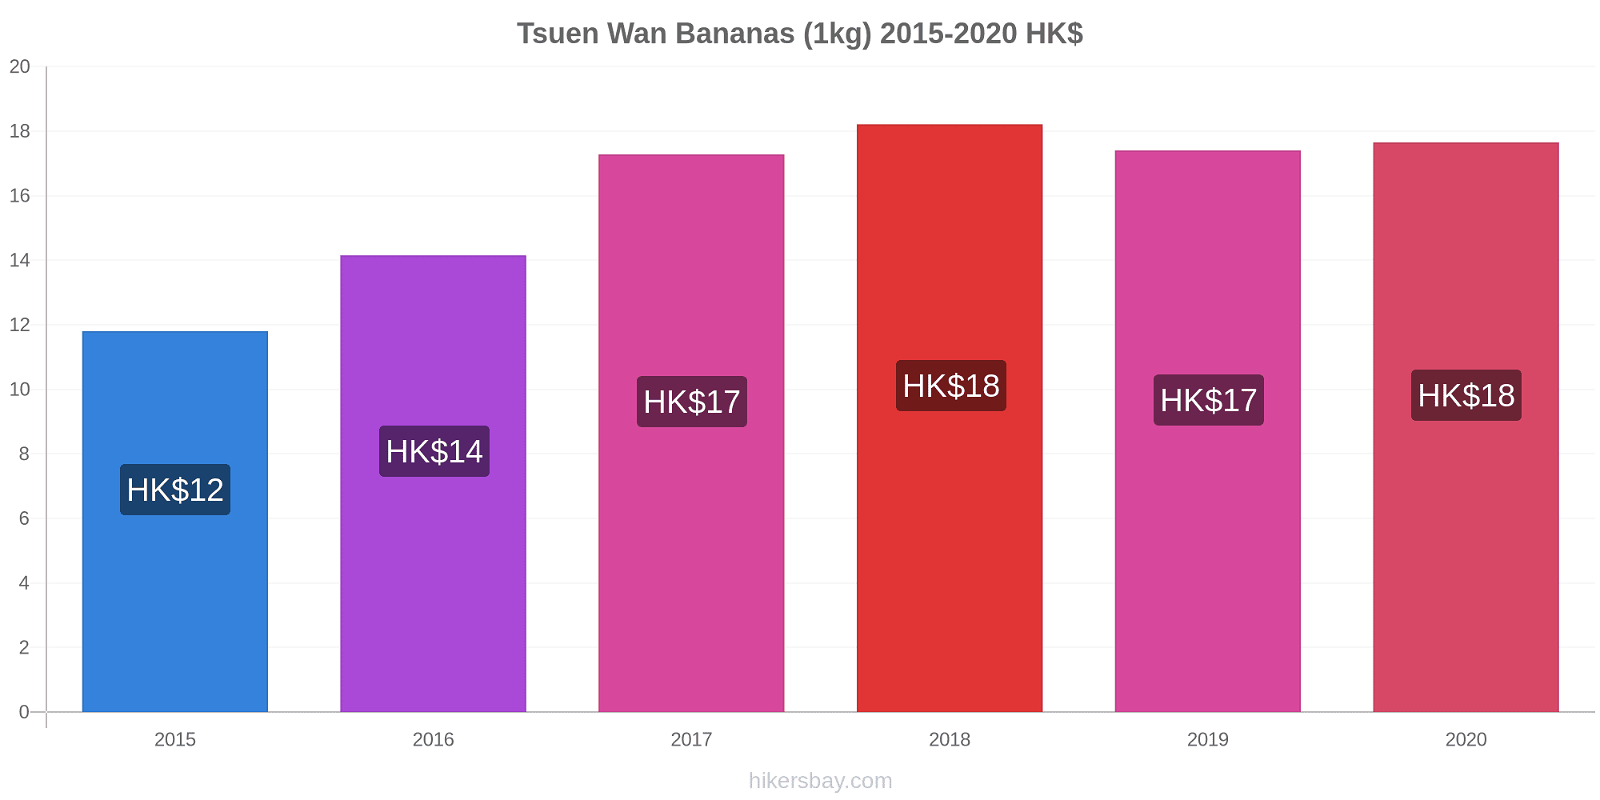 Tsuen Wan variação de preço Banana (1kg) hikersbay.com